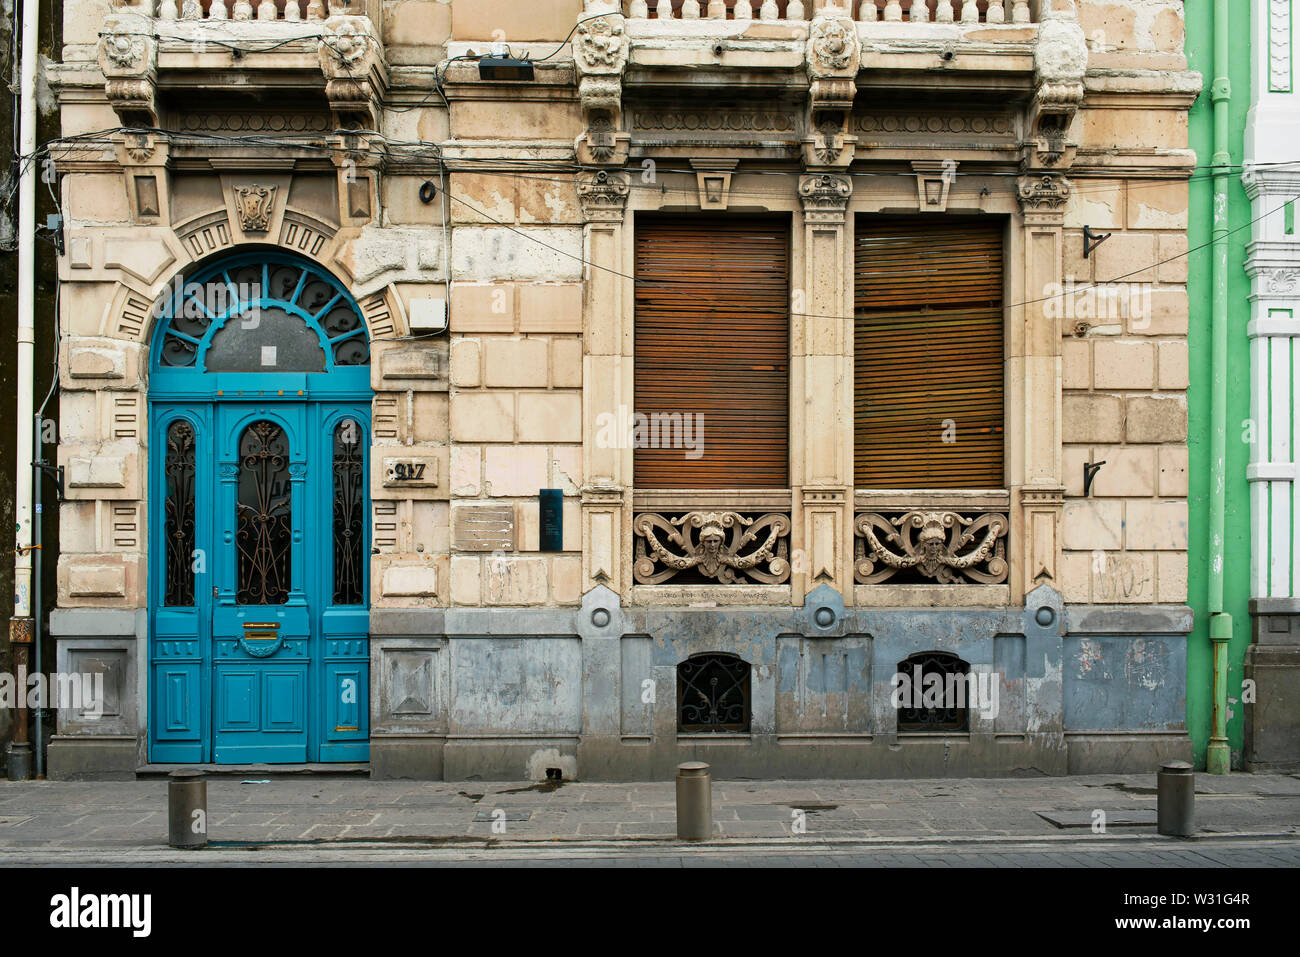 Edificio con facciata in stile coloniale spagnolo dettagli nel centro cittadino di Puebla, sito Patrimonio Mondiale dell'UNESCO. Puebla de Zaragoza, Messico. Giu 2019 Foto Stock